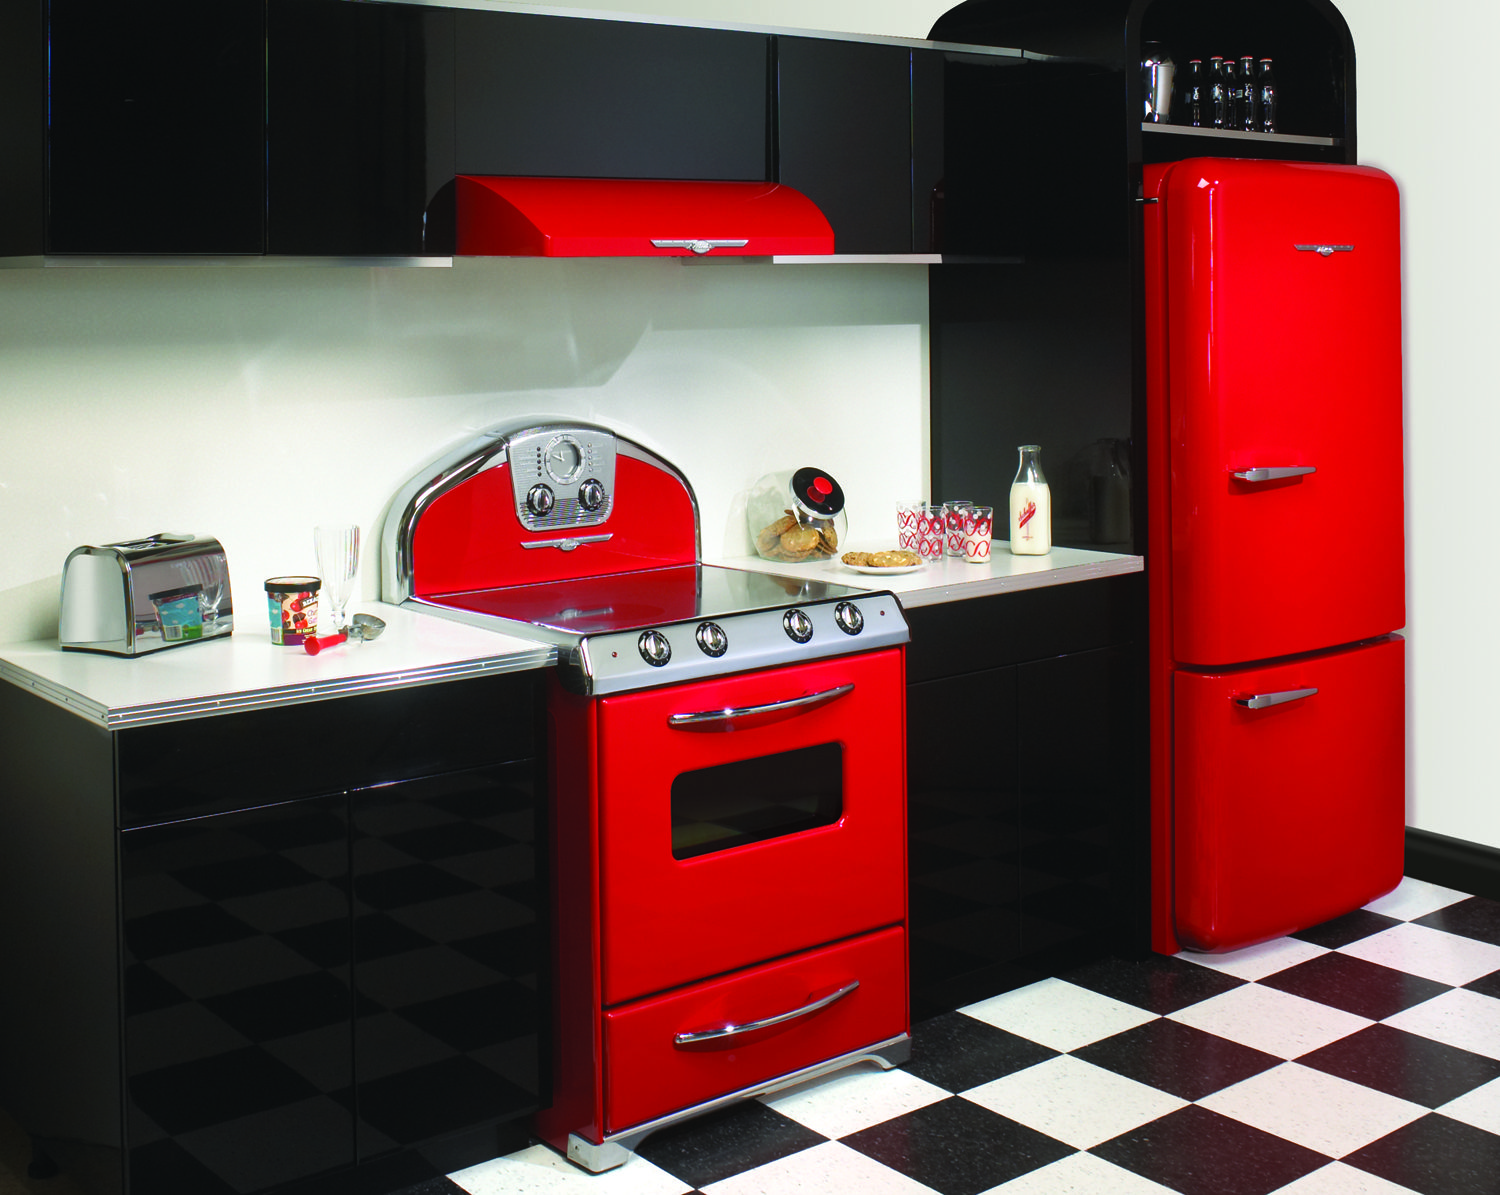 Retro Kitchen Appliances by Elmira Stove Works